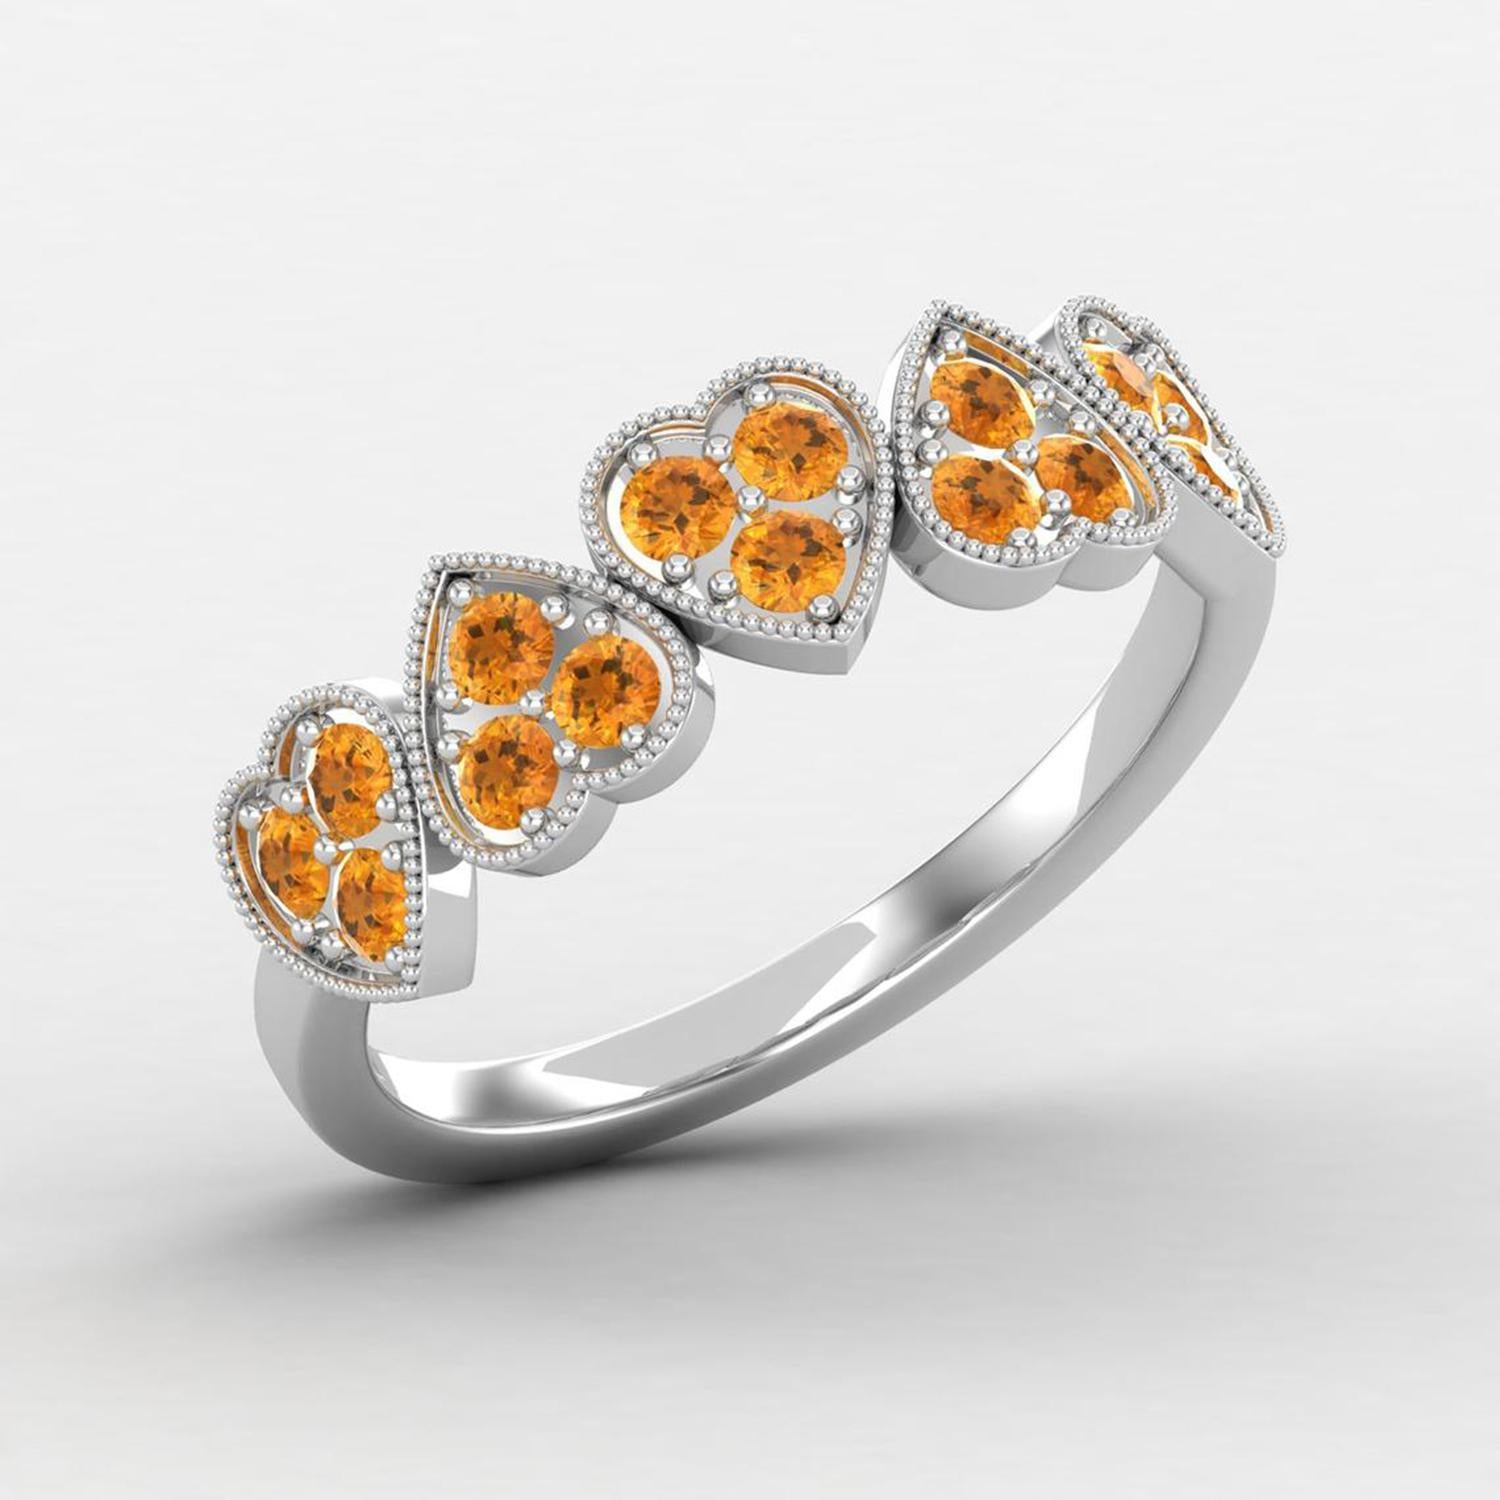 Modern 14 Karat Gold Citrine Ring / November Birthstone Ring / Heart Ring for Her For Sale